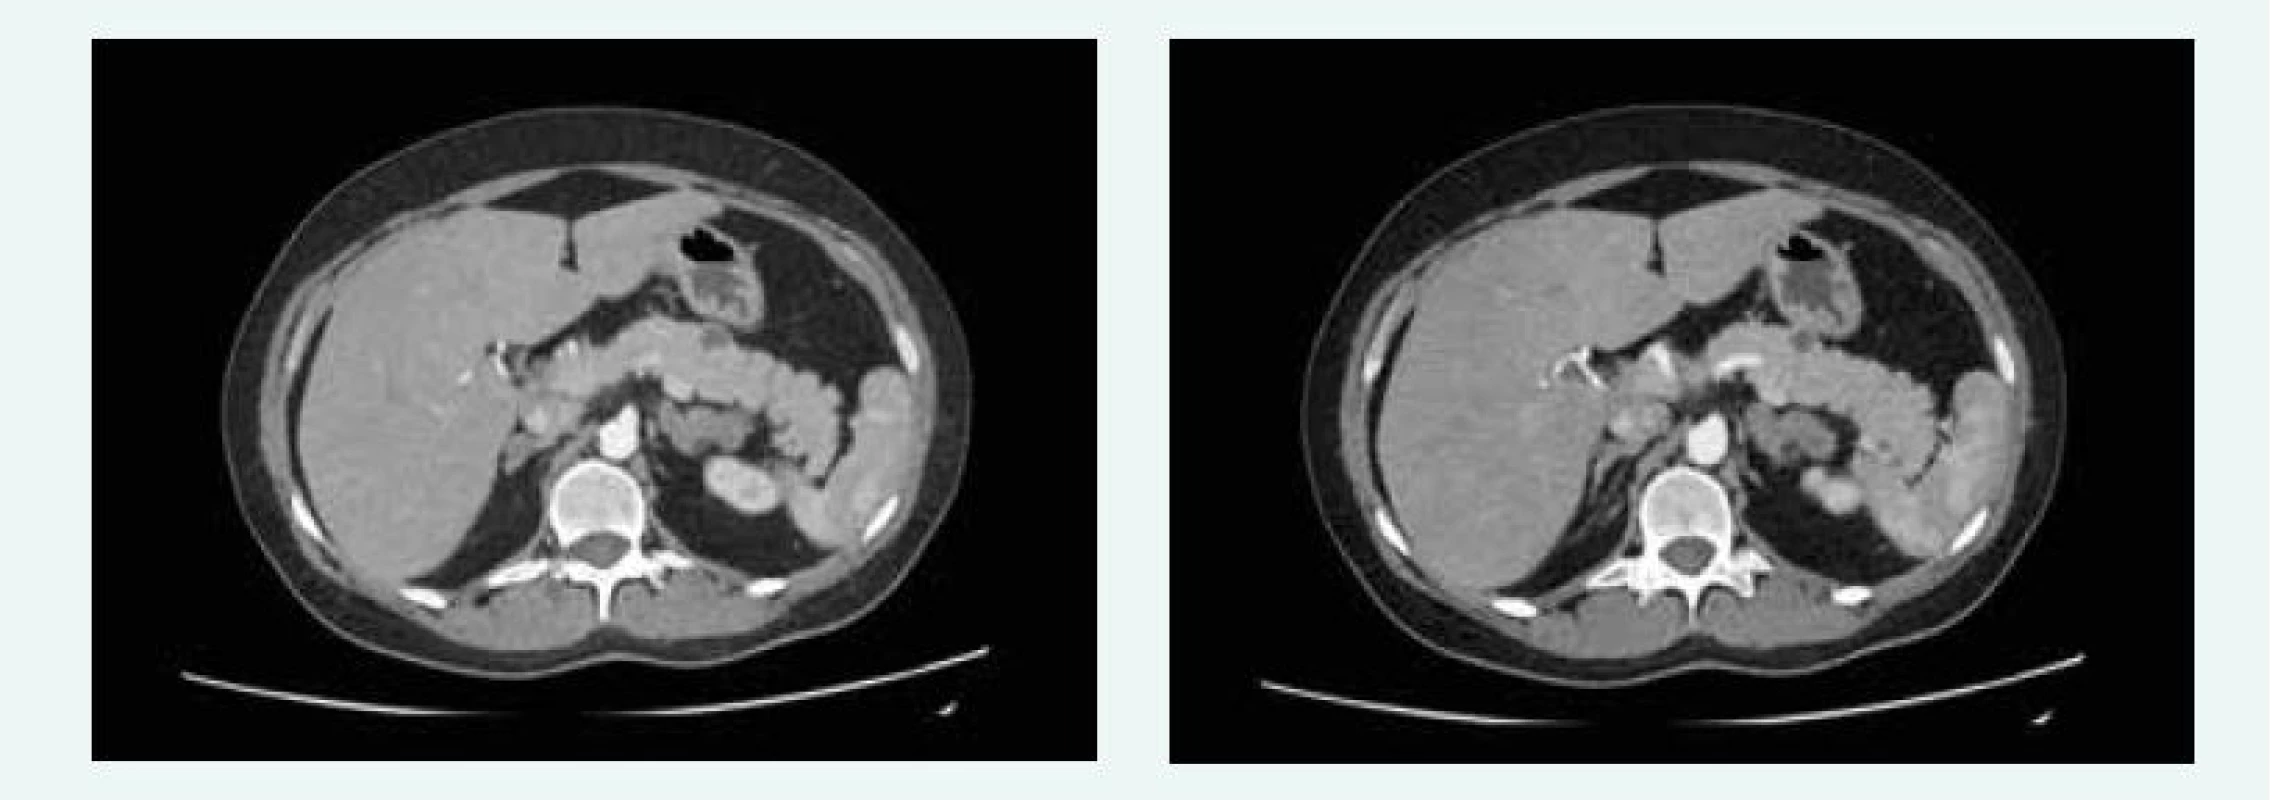 Kazuistika 5 – afunkční neuroendokrinní tumory slinivky (CT) (snímky v plném rozlišení naleznete v on-line verzi článku)